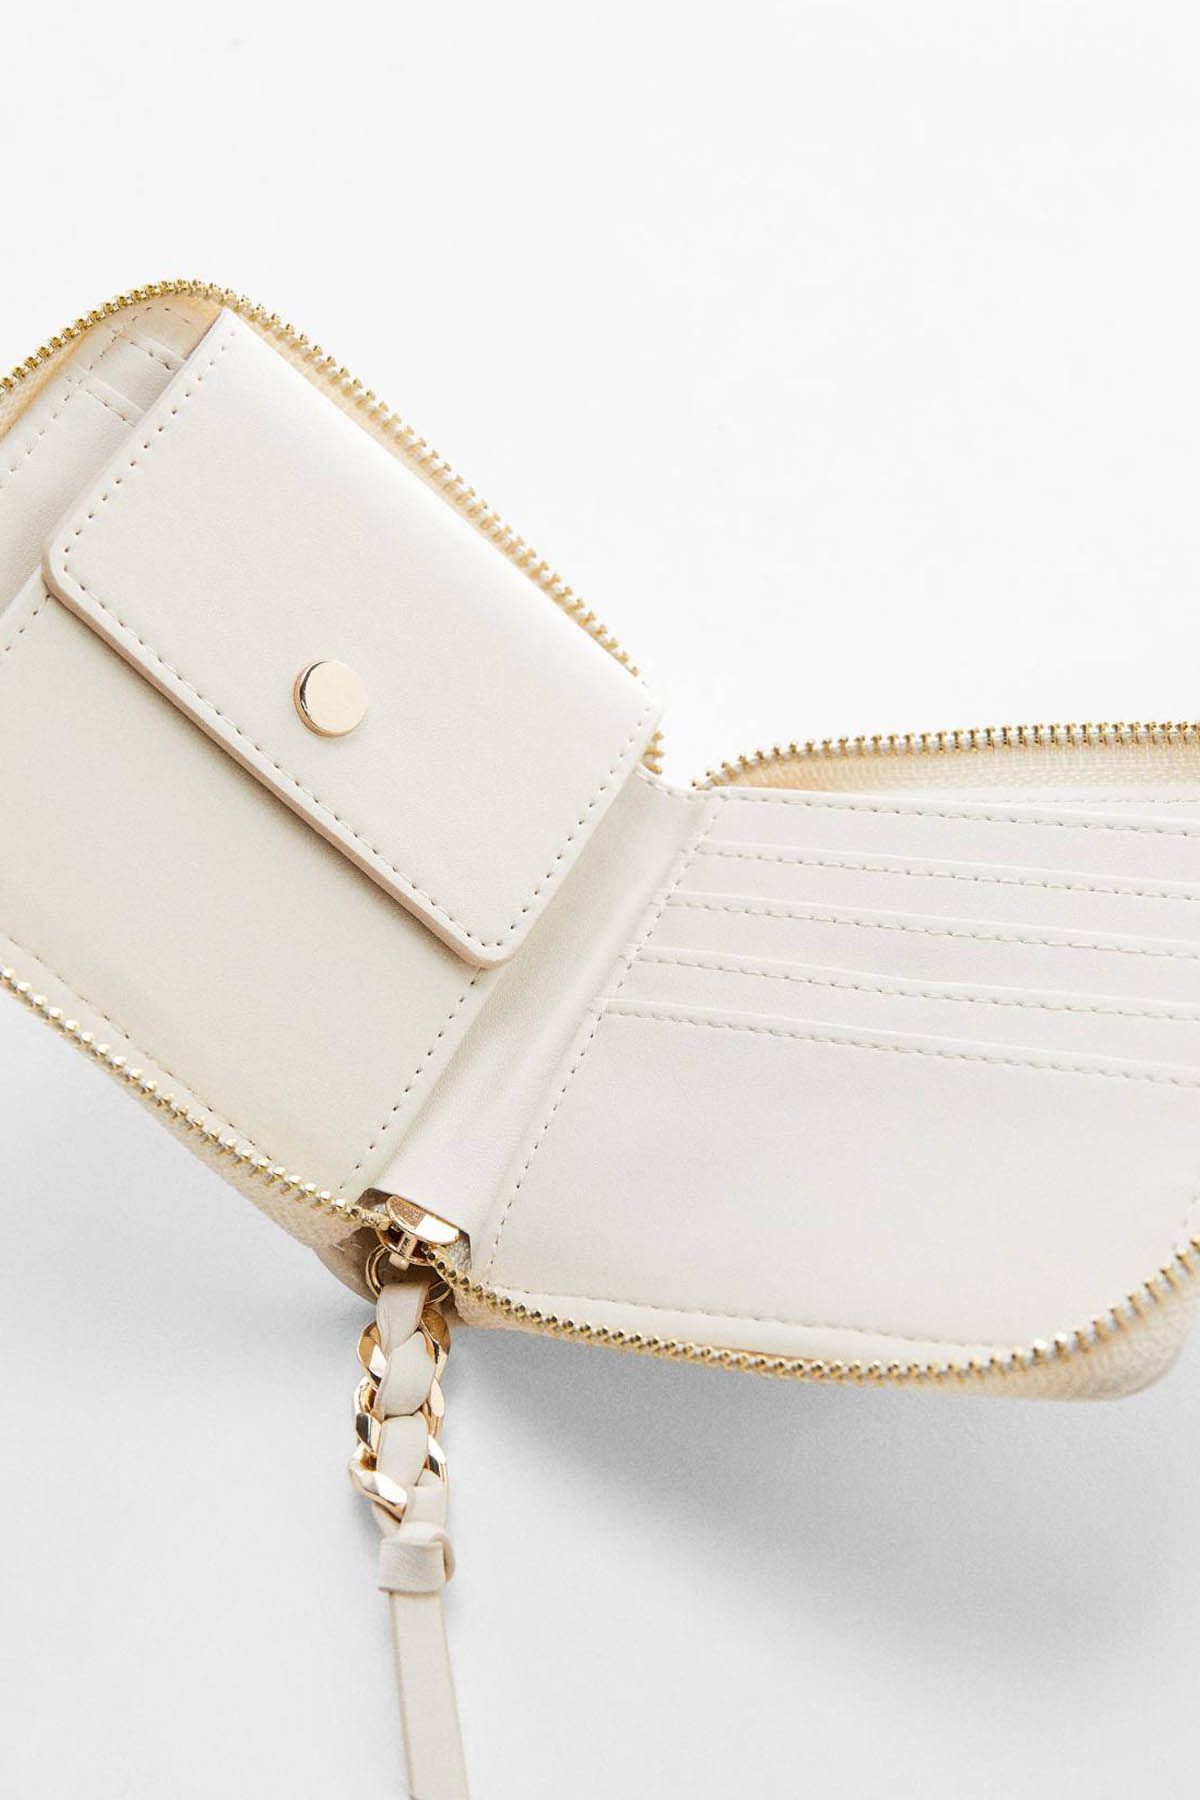 Mango Gold purse | Gold purses, Purses, Mini purse